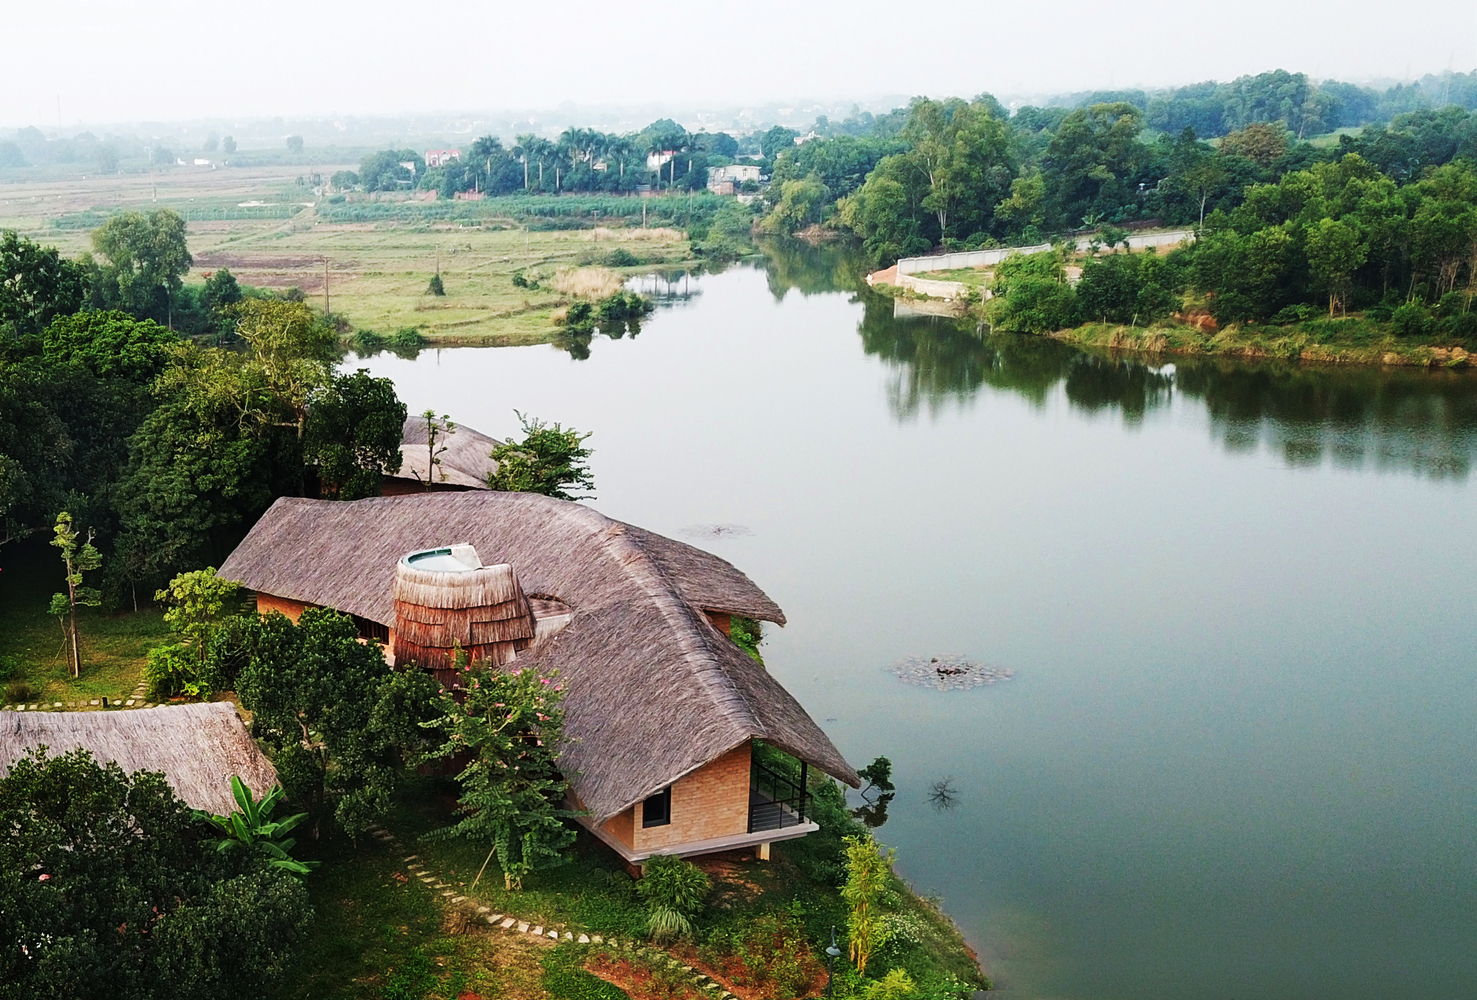 Hình ảnh toàn cảnh ngôi nhà ông Hùng nhìn từ trên cao, xung quanh là cây cối, sông nước yên bình